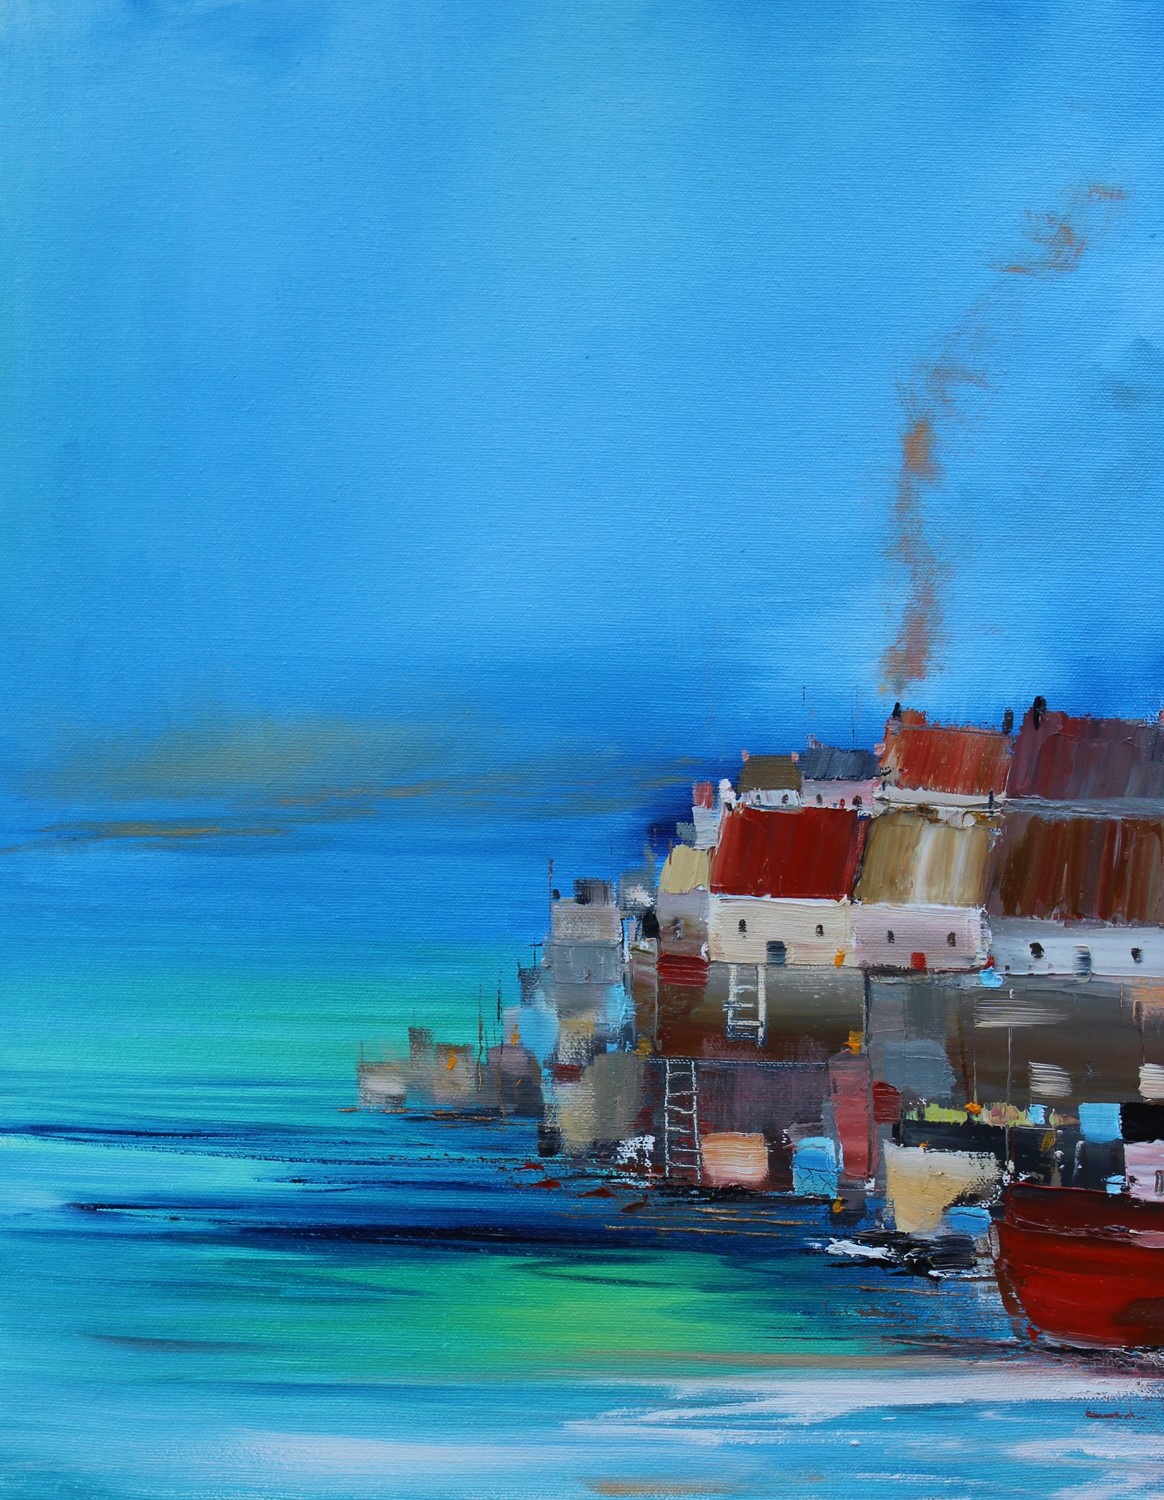 'Cluttered Harbourside ' by artist Rosanne Barr